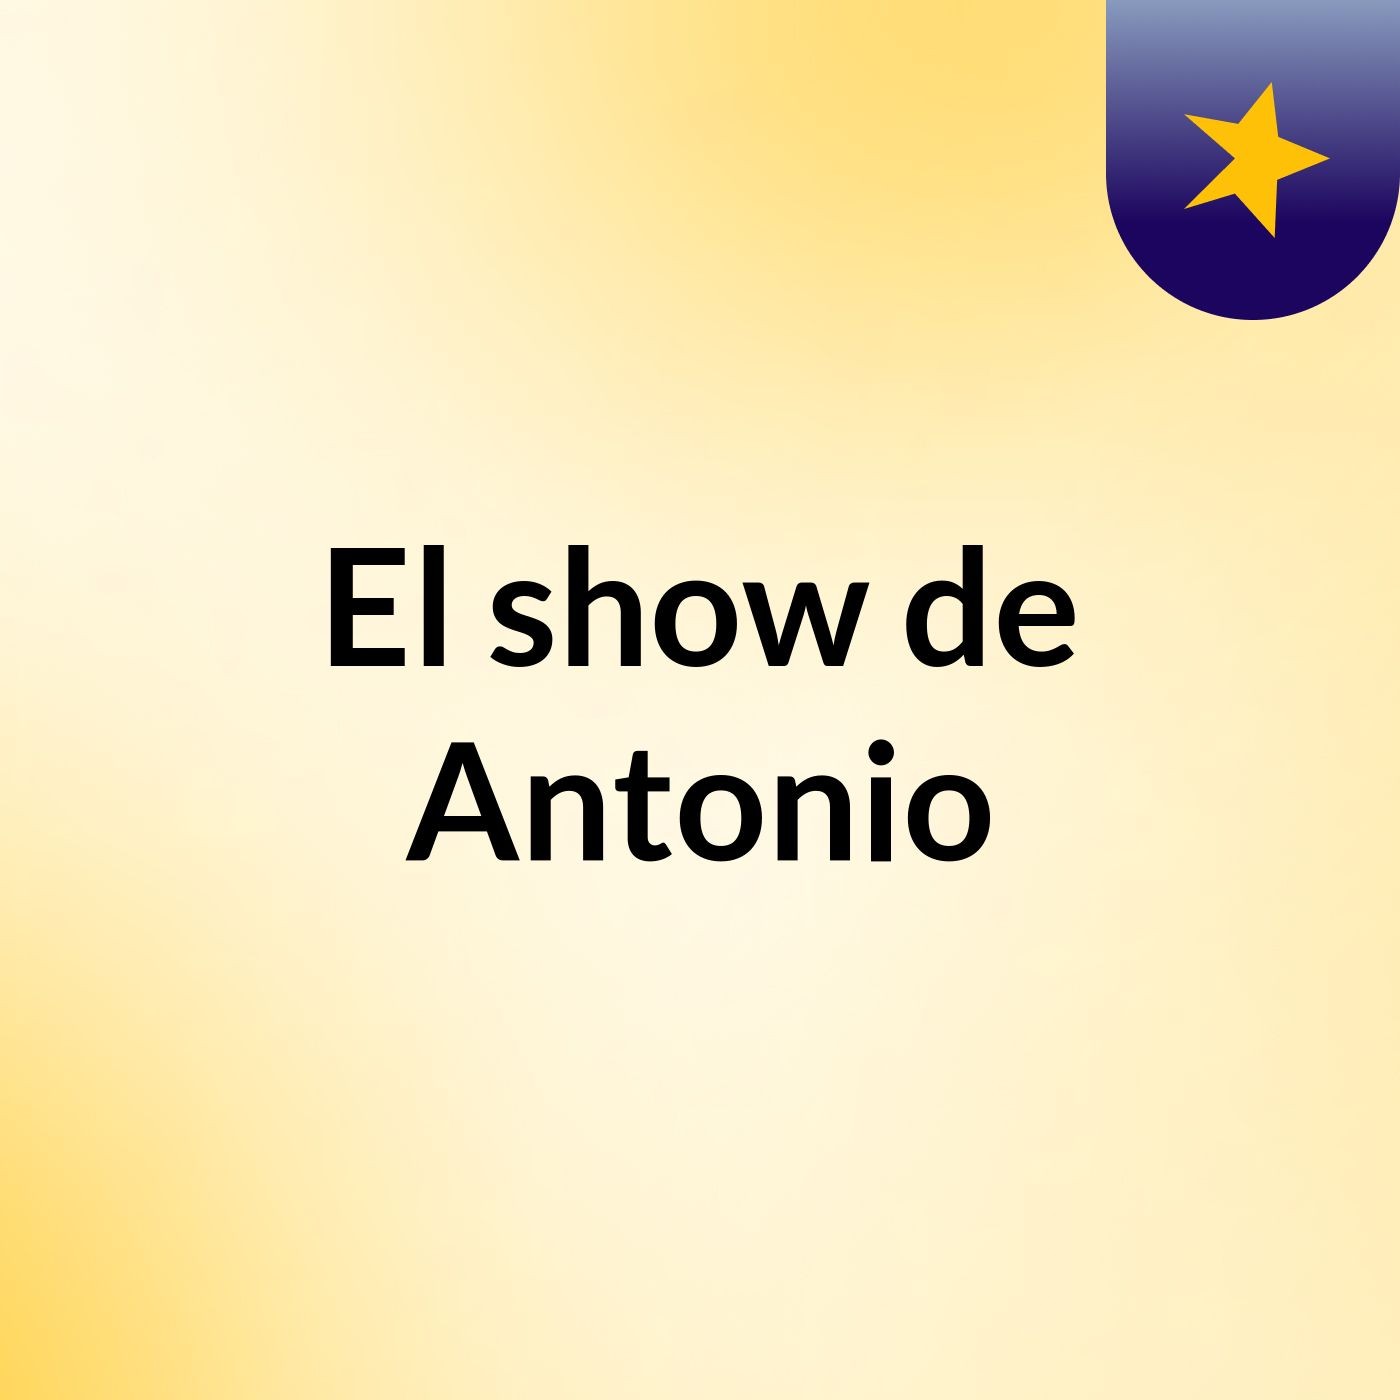 El show de Antonio